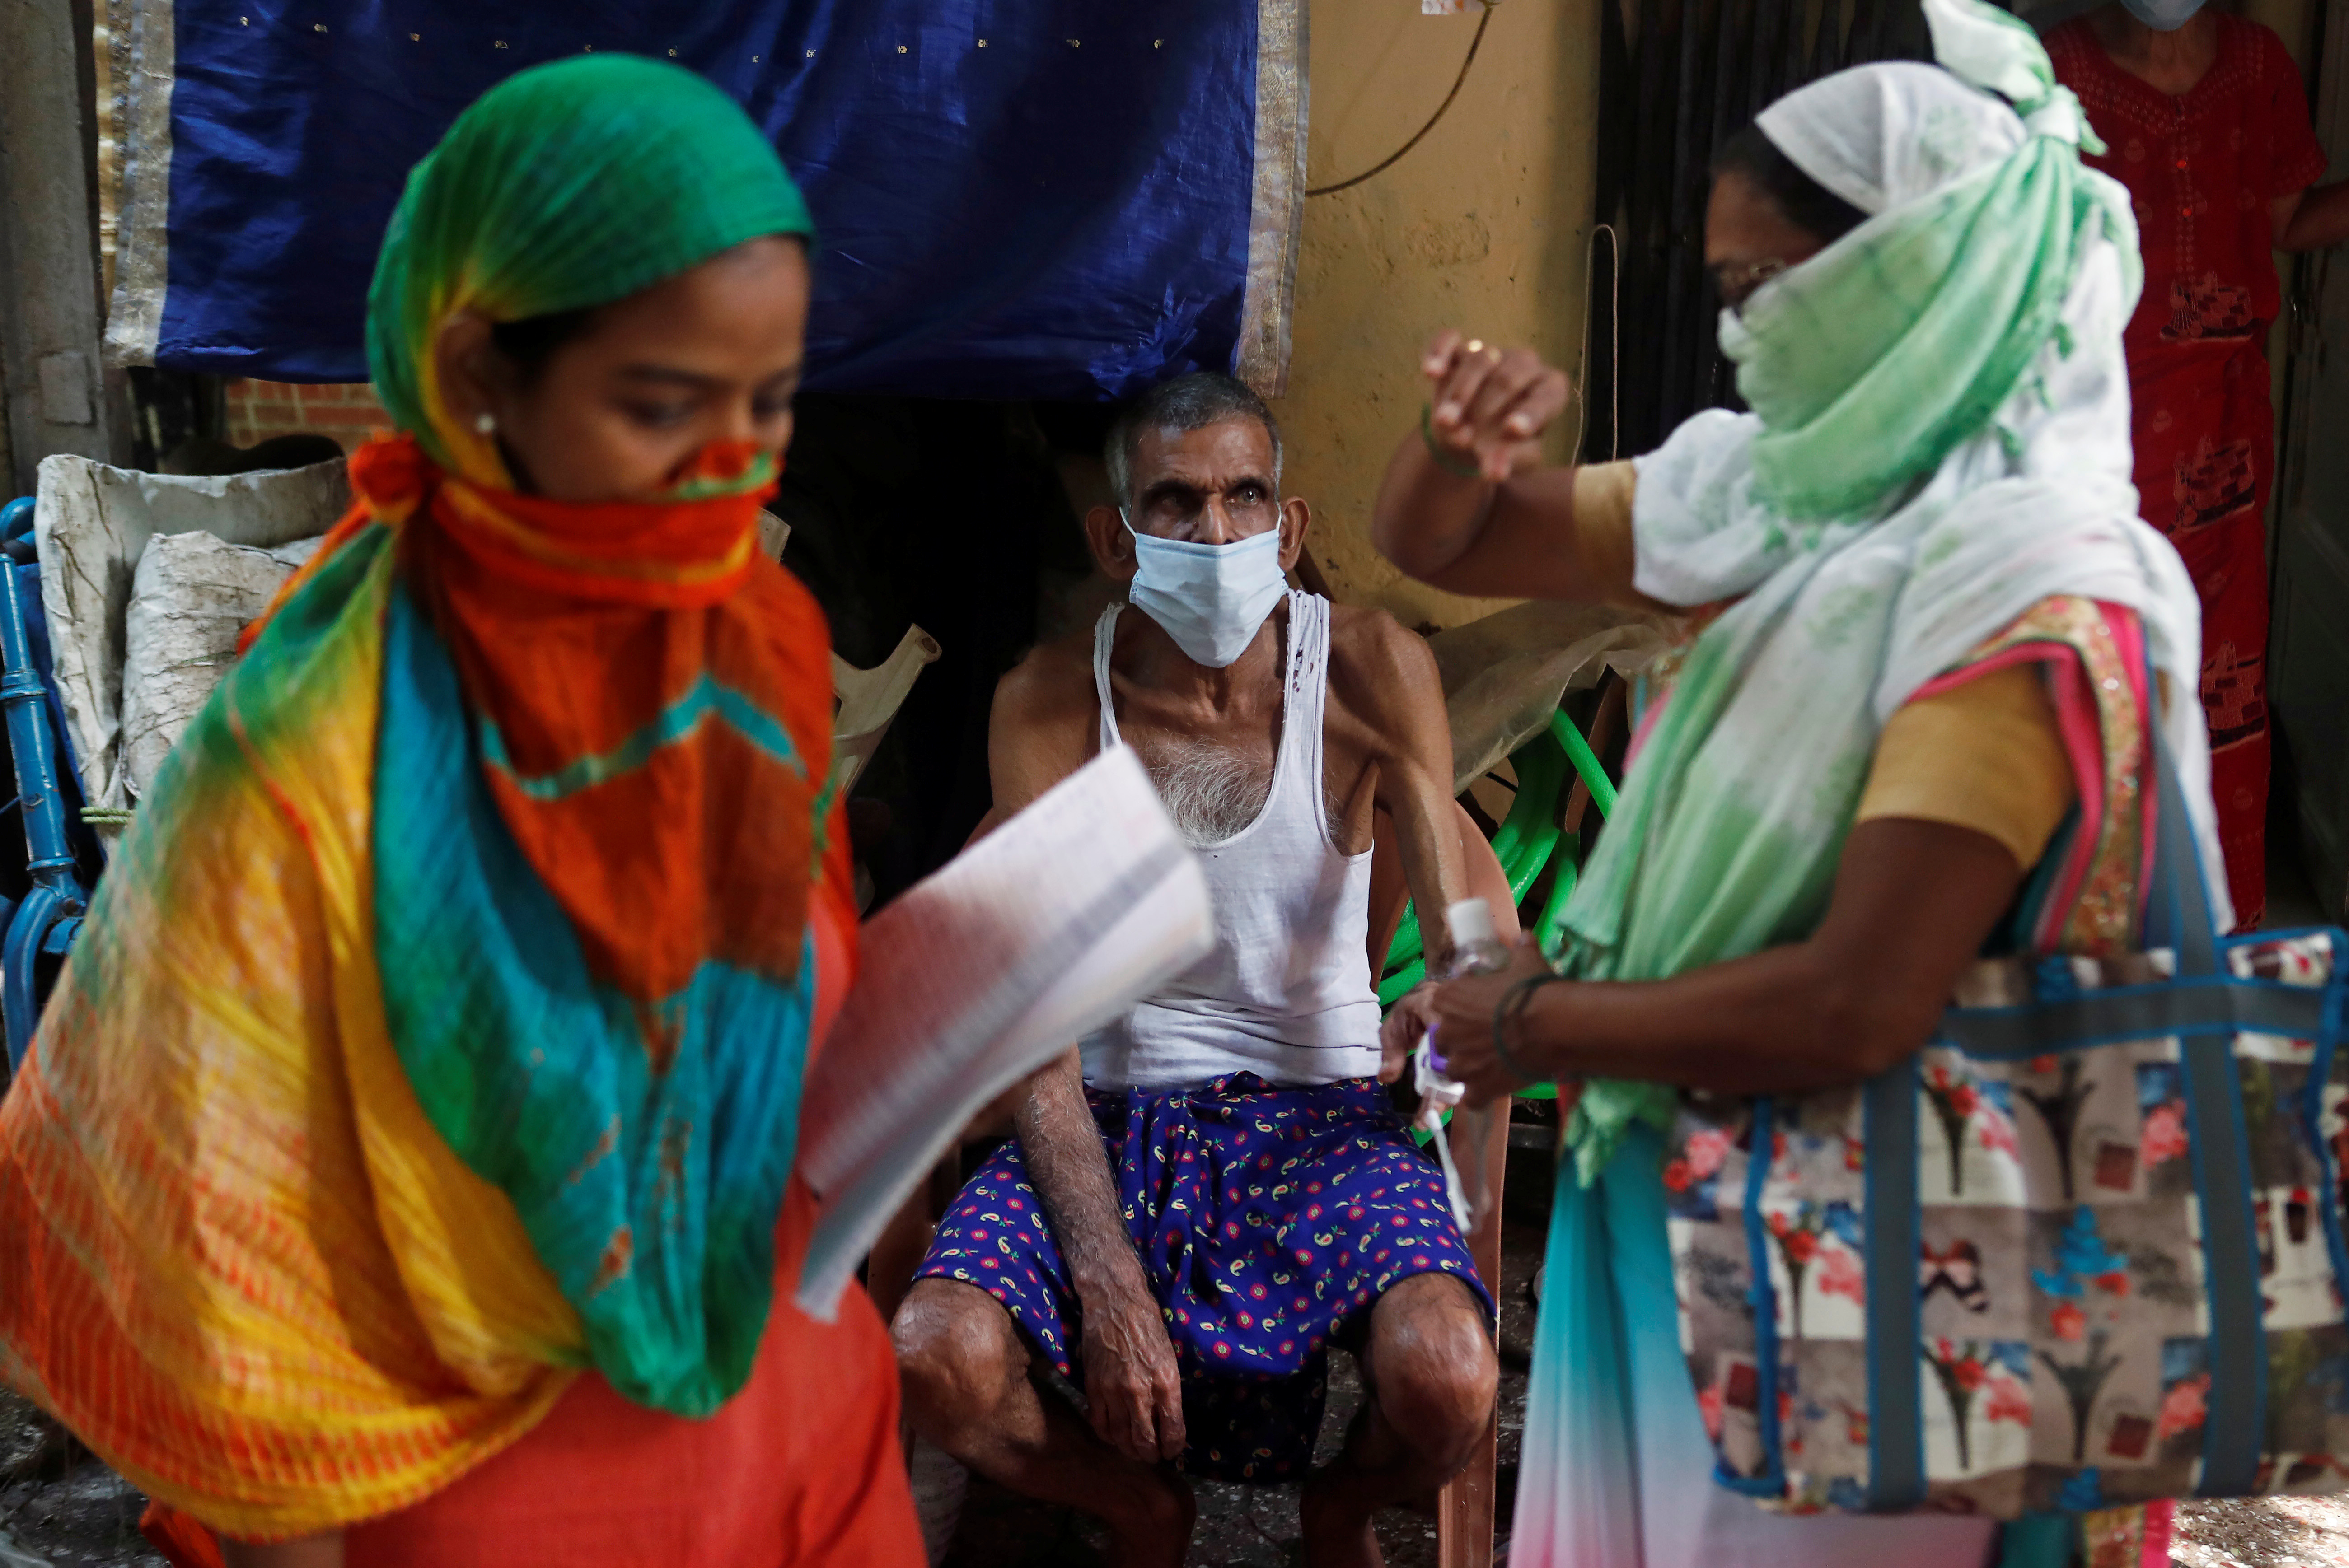 Personas en india durante la pandemia de Covid-19. Foto: REUTERS/Francis Mascarenhas